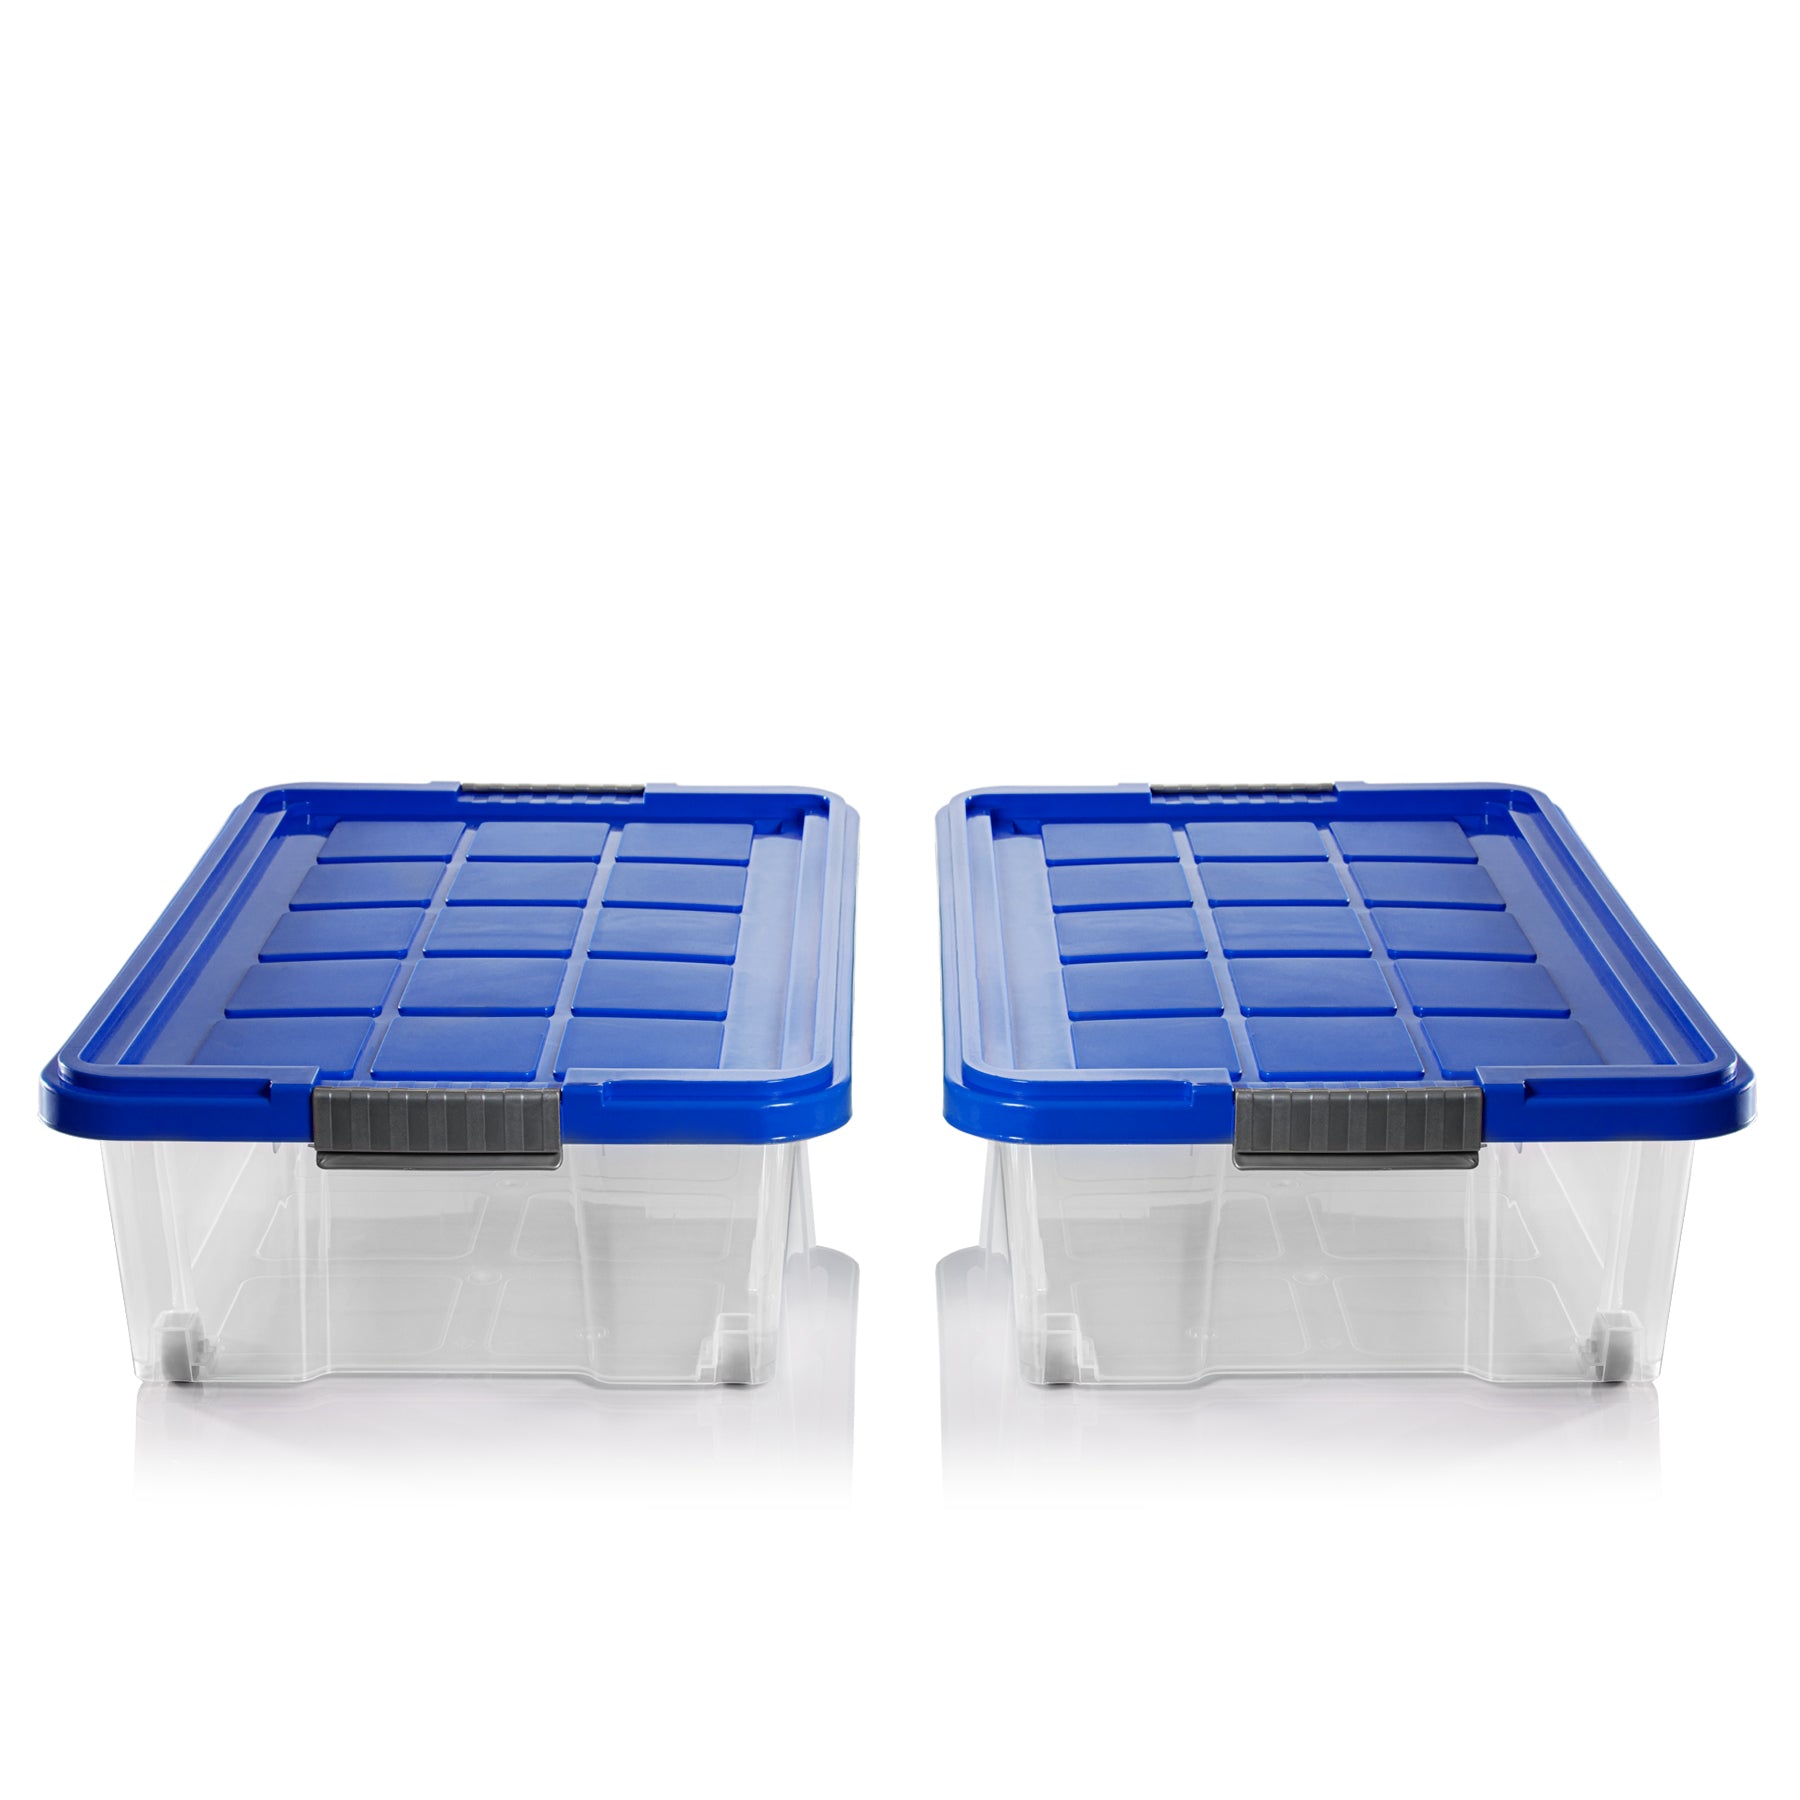 BigDean 2x Unterbettkommode Aufbewahrungsbox mit Deckel 25L azurblau 60x40x17,5cm - mit Rollen + Clipverschluss nestbar - Eurobox Aufbewahrungsbox Storage Box Bettkasten - Made in Germany 2